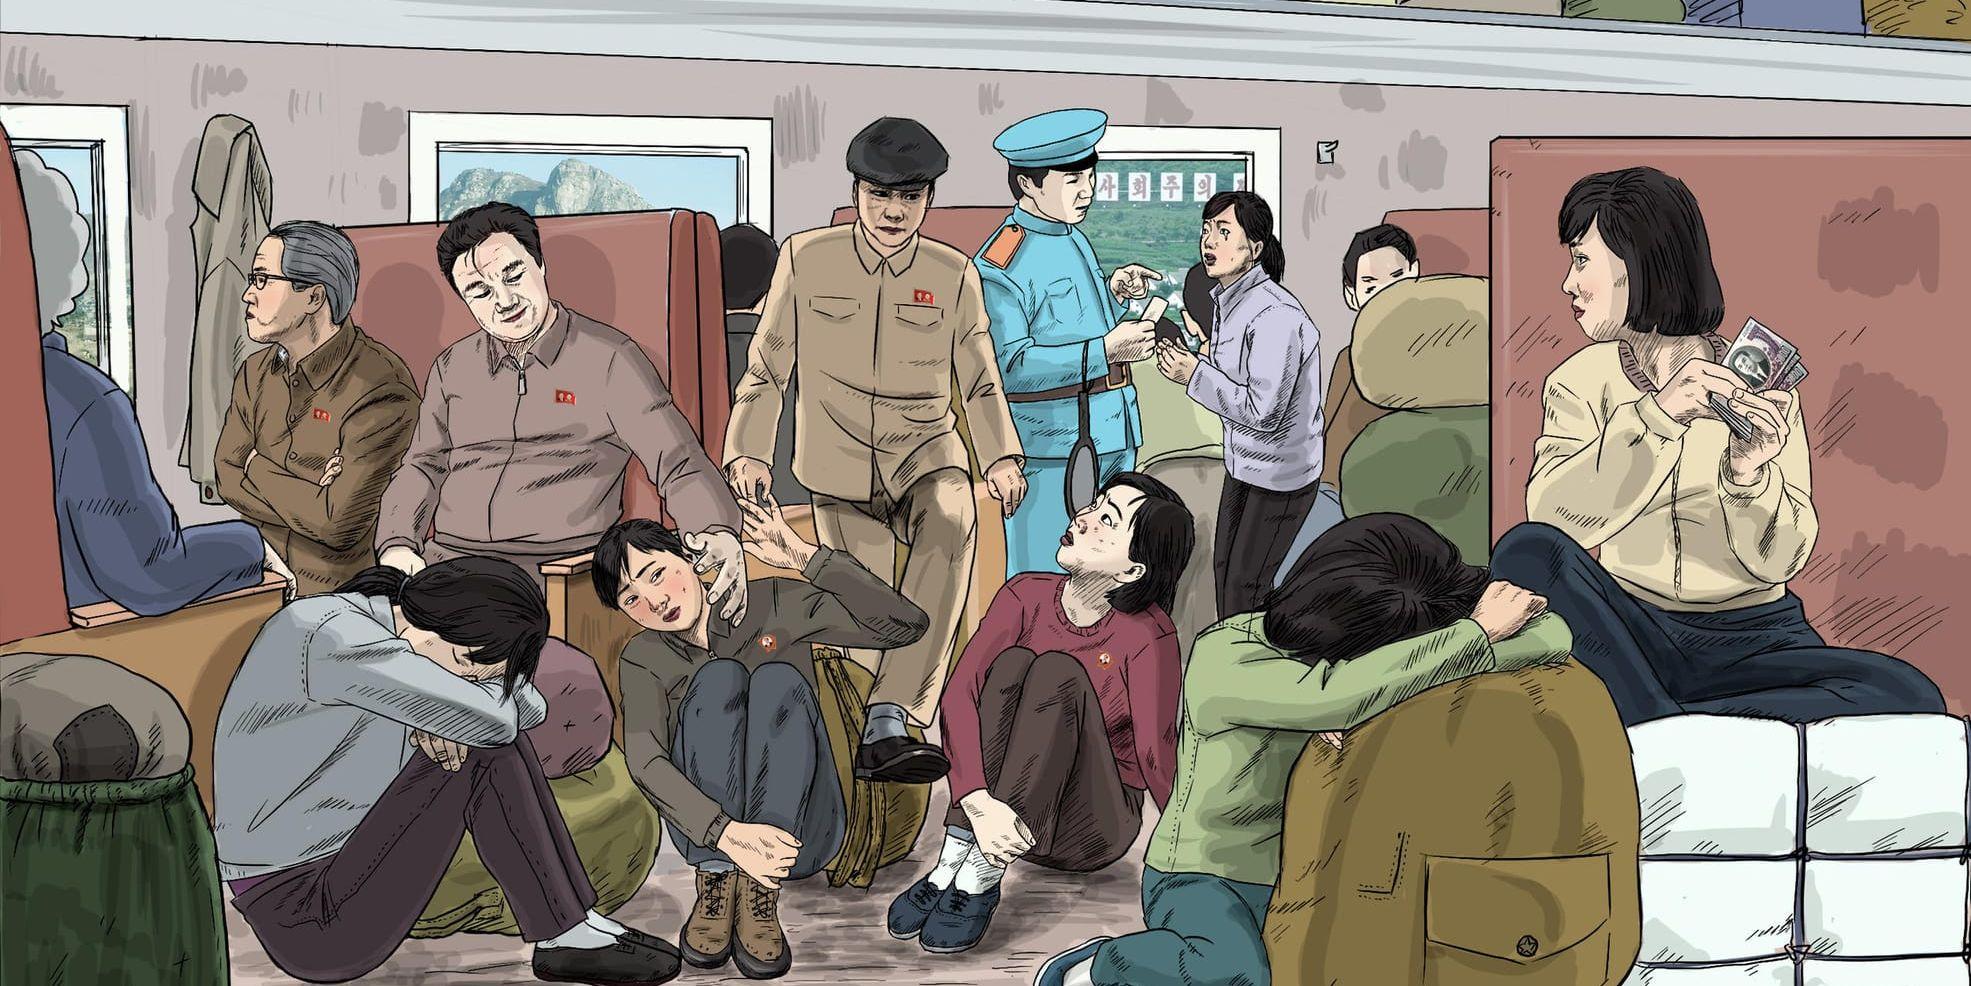 Inte ens på tåg går nordkoreanska kvinnor säkra. Bilden har ritats av nordkoreanen Choi Seong-Guk, som tidigare var tecknare åt staten.